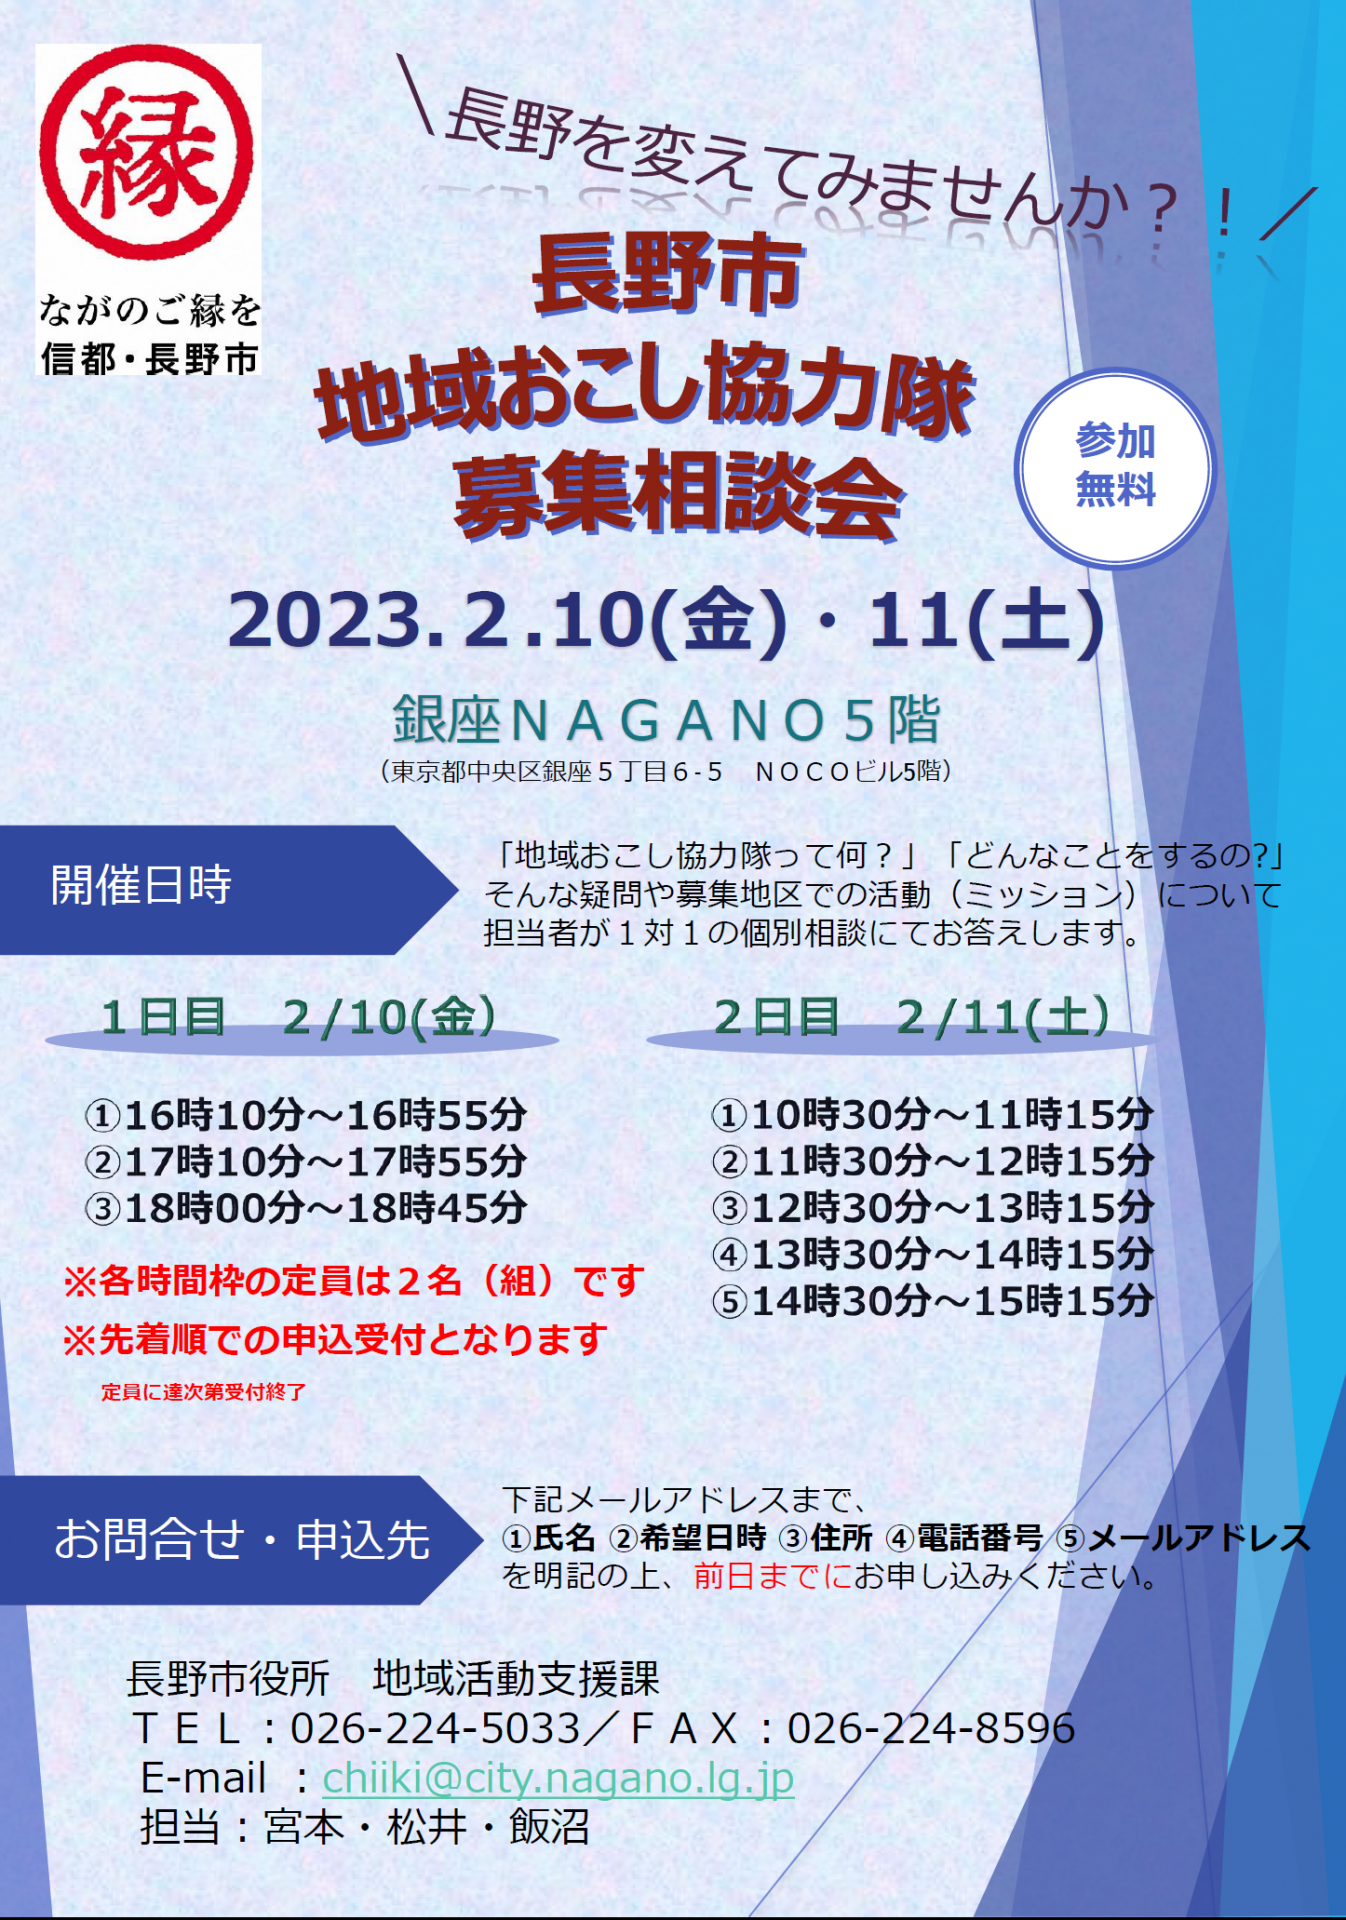 長野市 地域おこし協力隊募集相談会 | 移住関連イベント情報